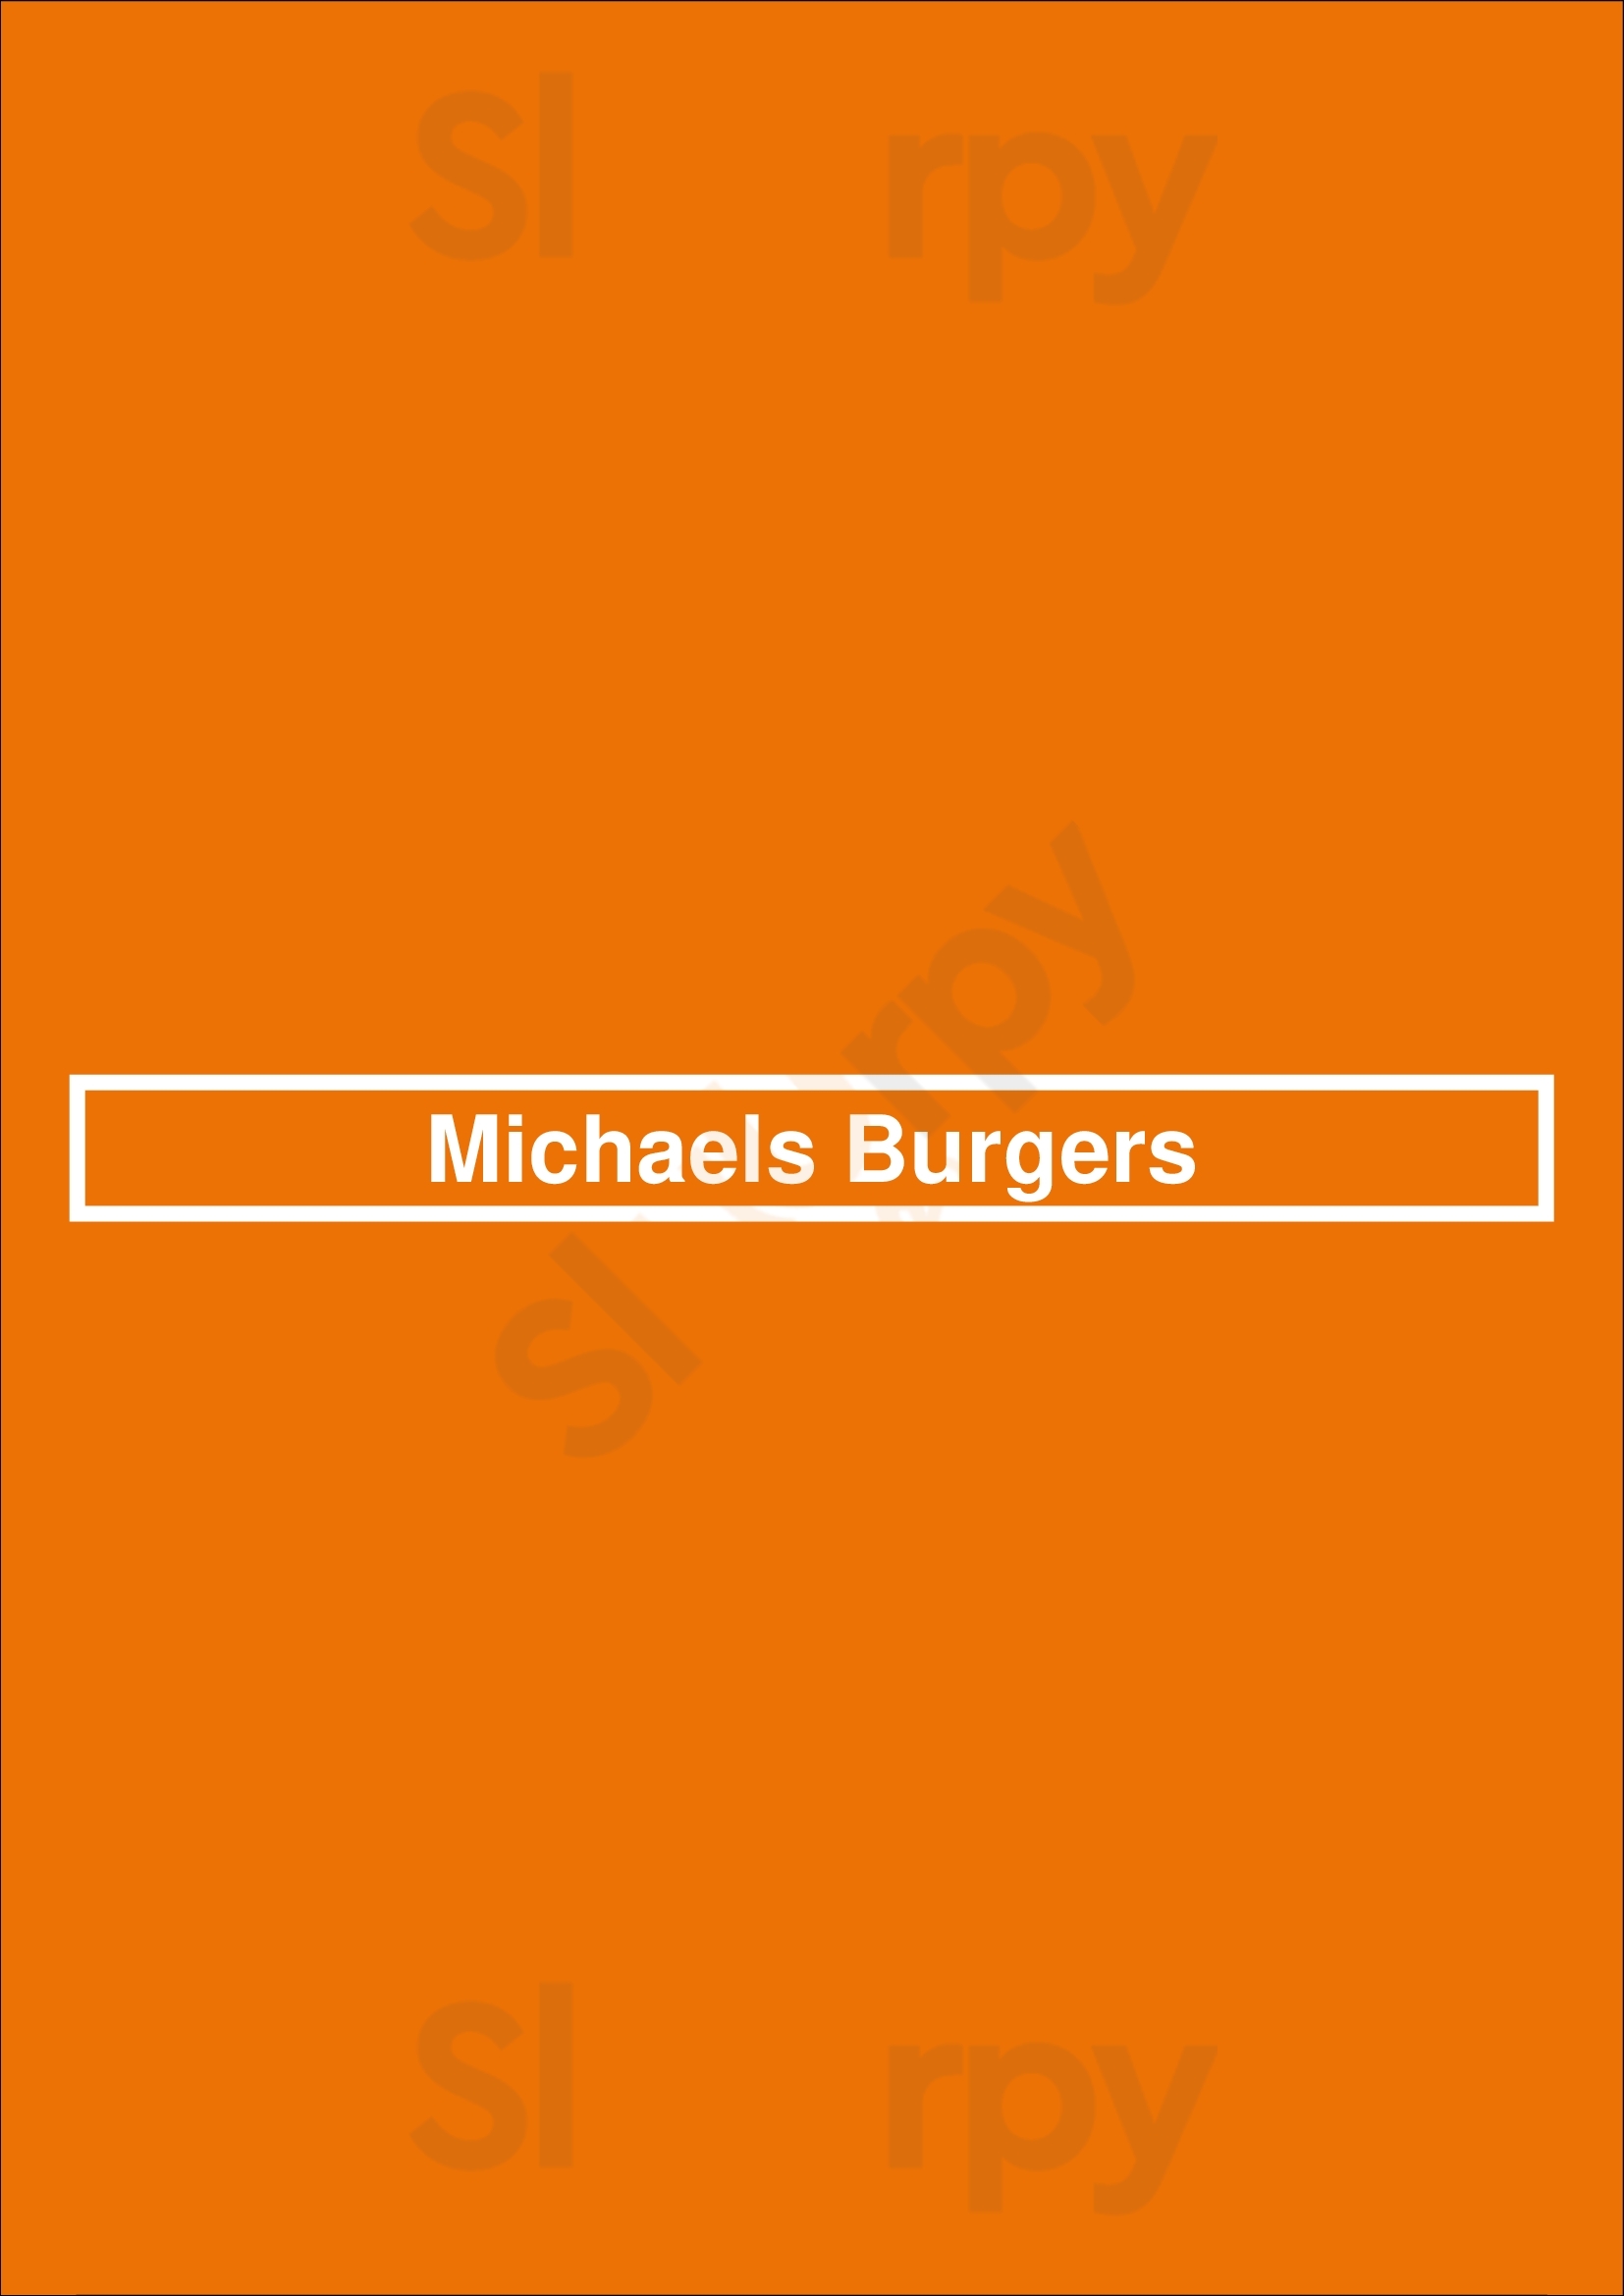 Michaels Burgers Los Angeles Menu - 1